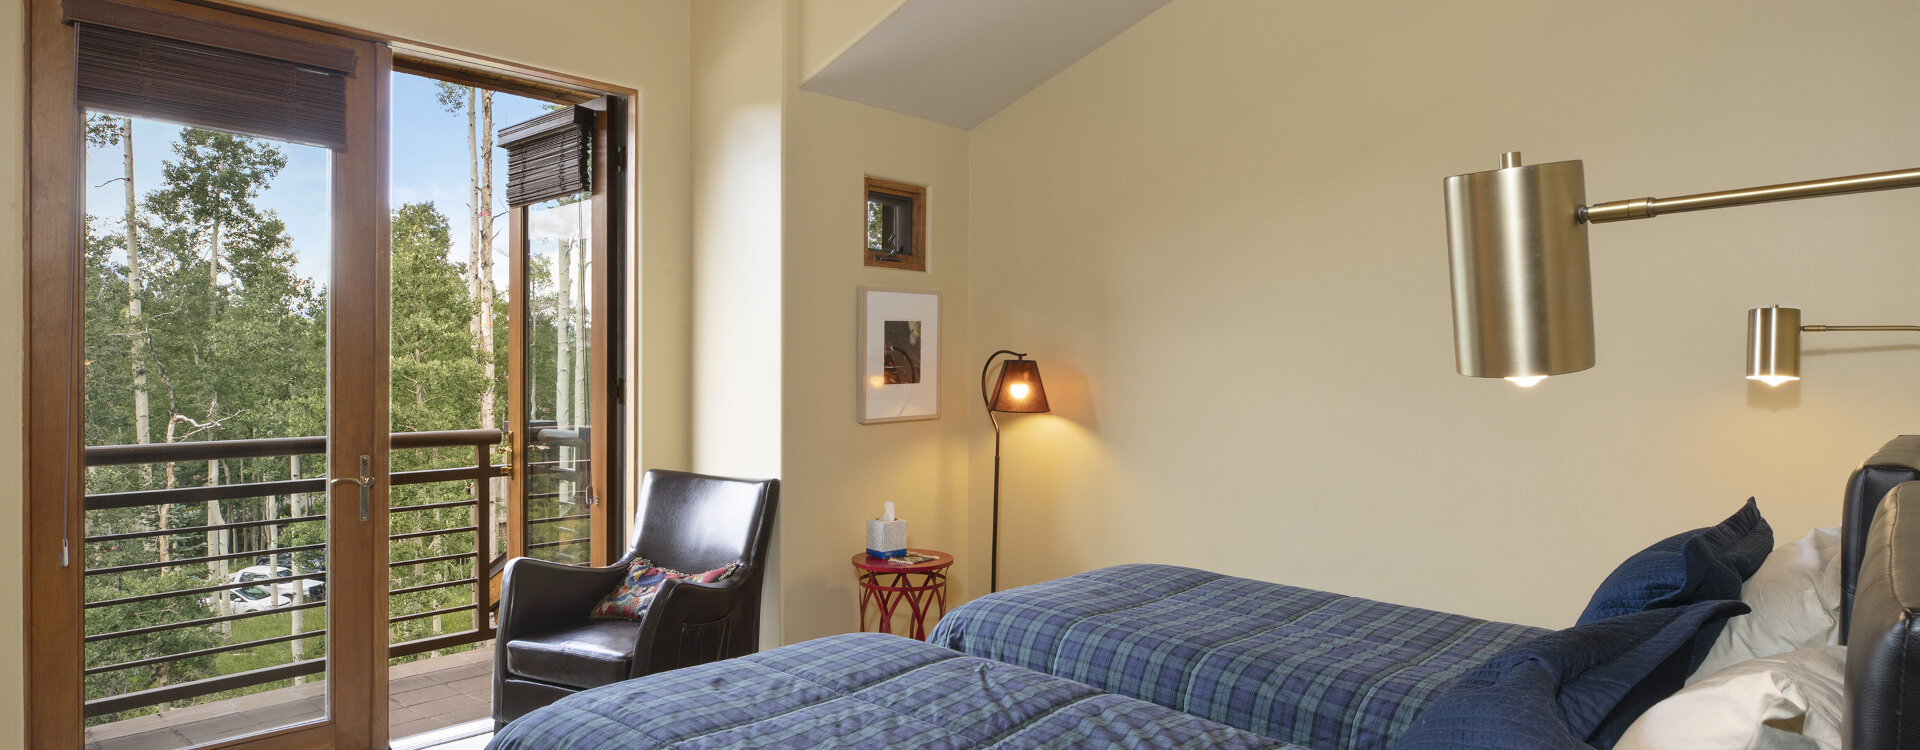 4.1-telluride-wilson-view-guest-bedroom-deck